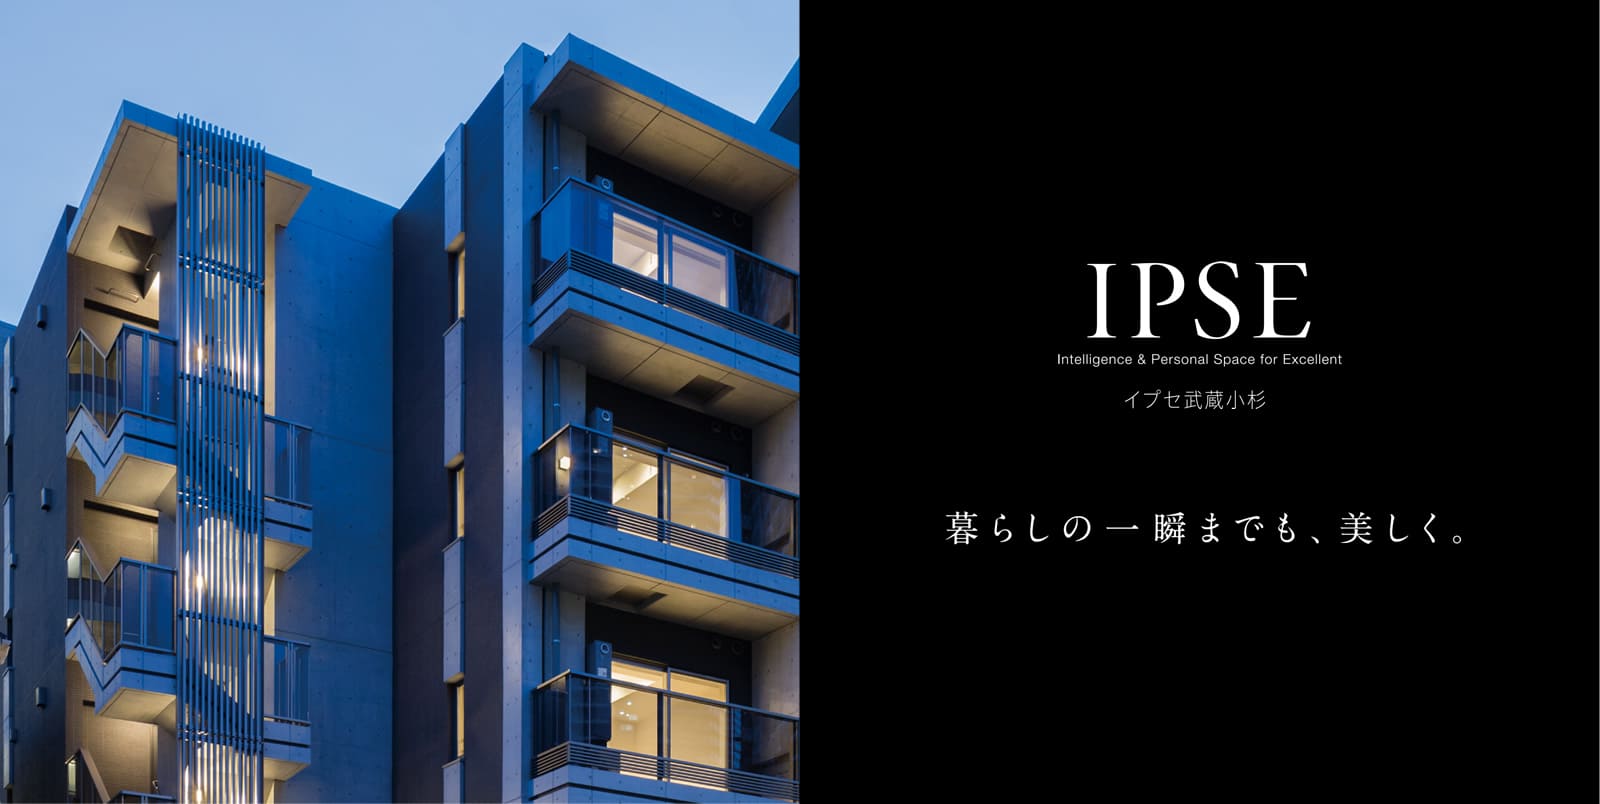 イプセ武蔵小杉 IPSE Intelligence & Personal Space for Excellent 暮らしの一瞬までも、美しく